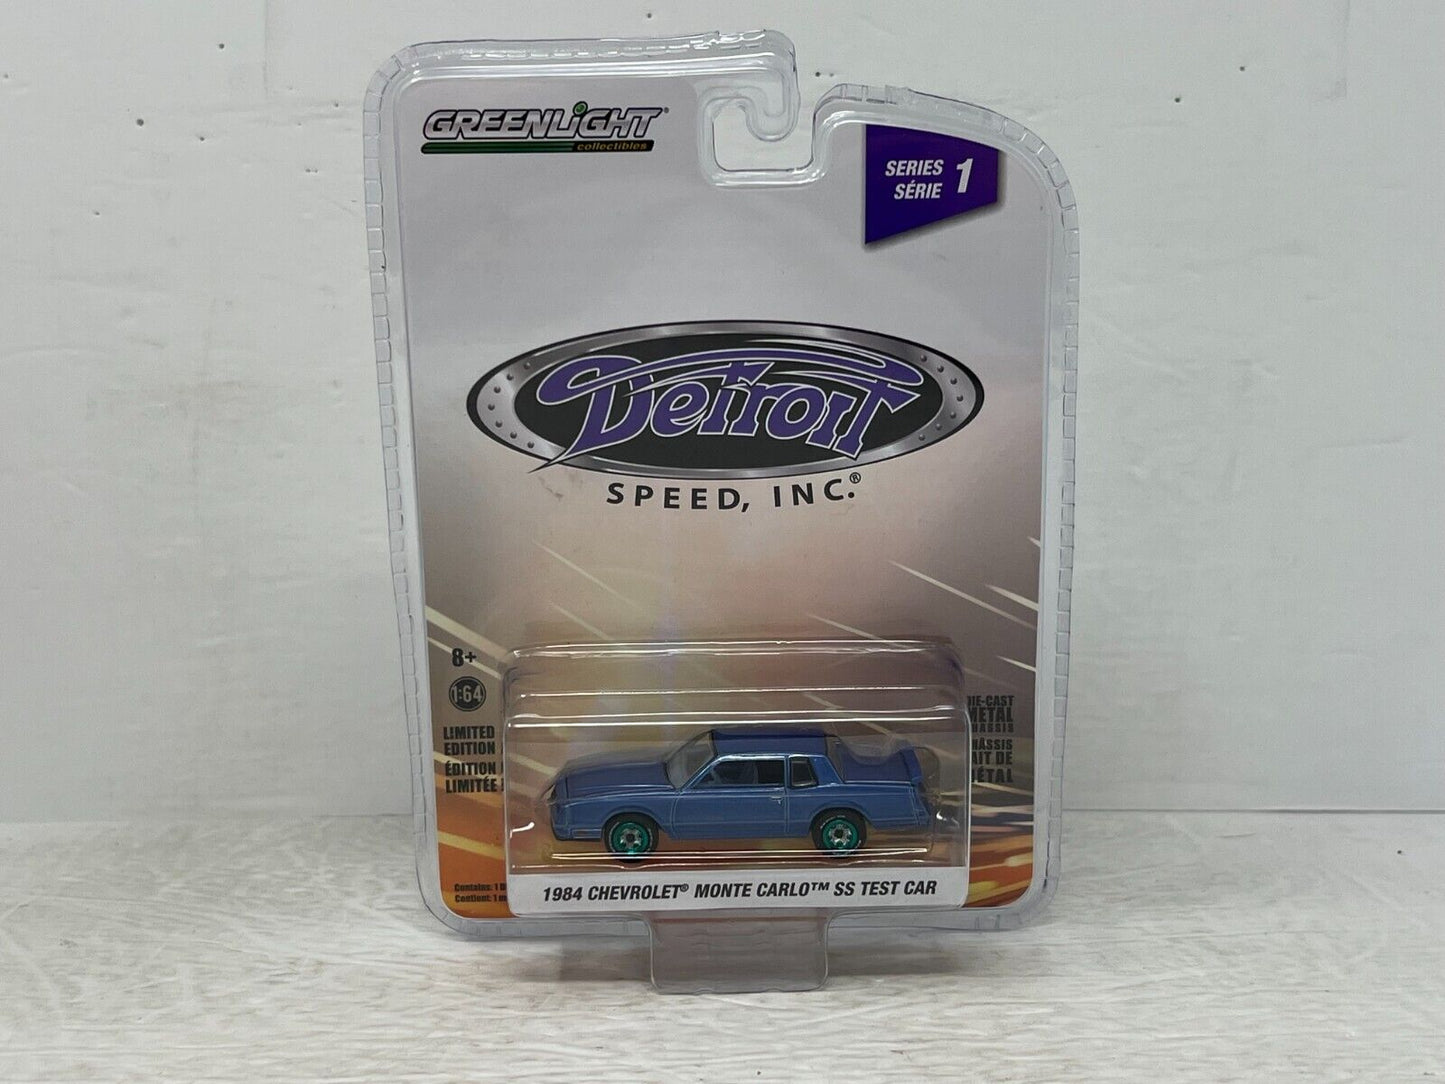 Greenlight Detroit Speed, Inc. 1984 Chevy Monte Carlo SS Greenie 1:64 Diecast